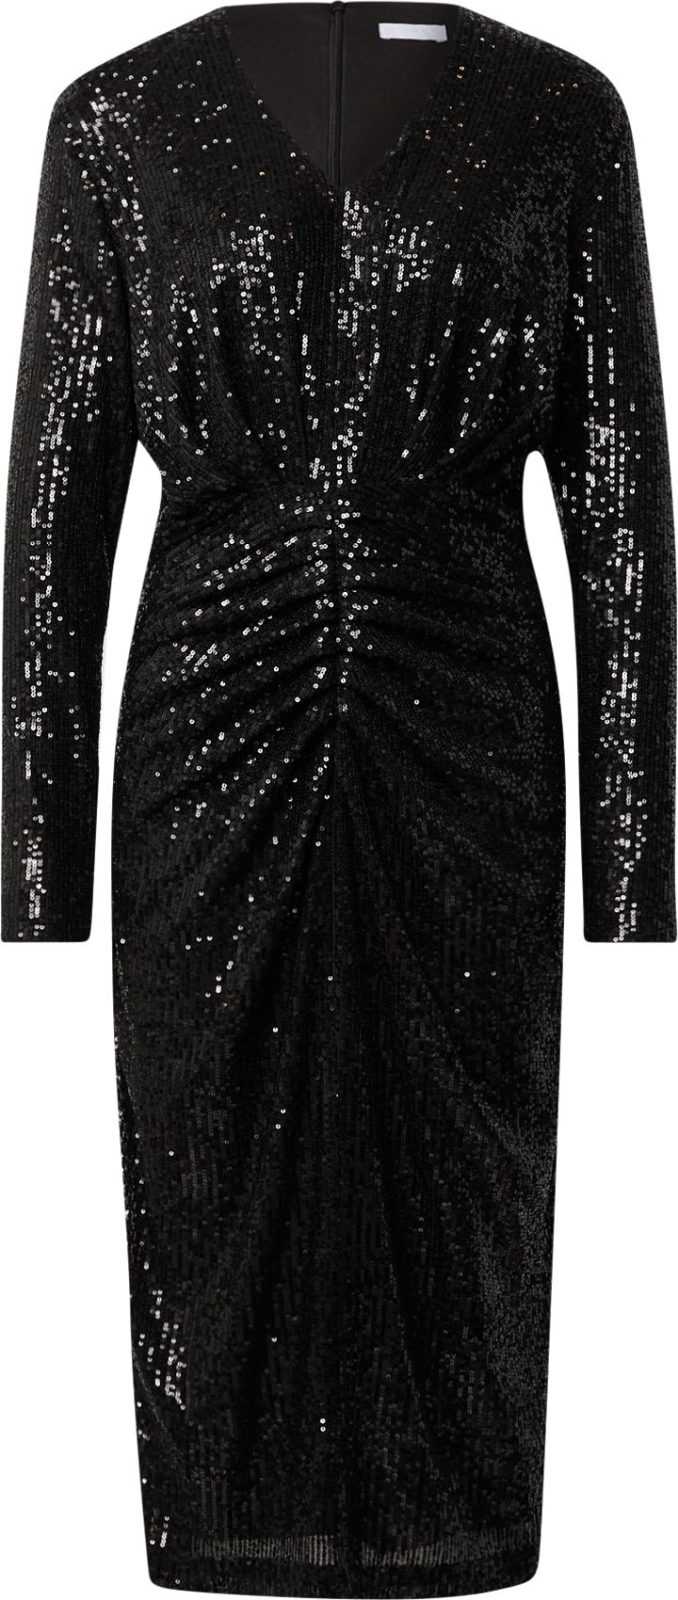 2NDDAY Koktejlové šaty 'Cezanne' černá